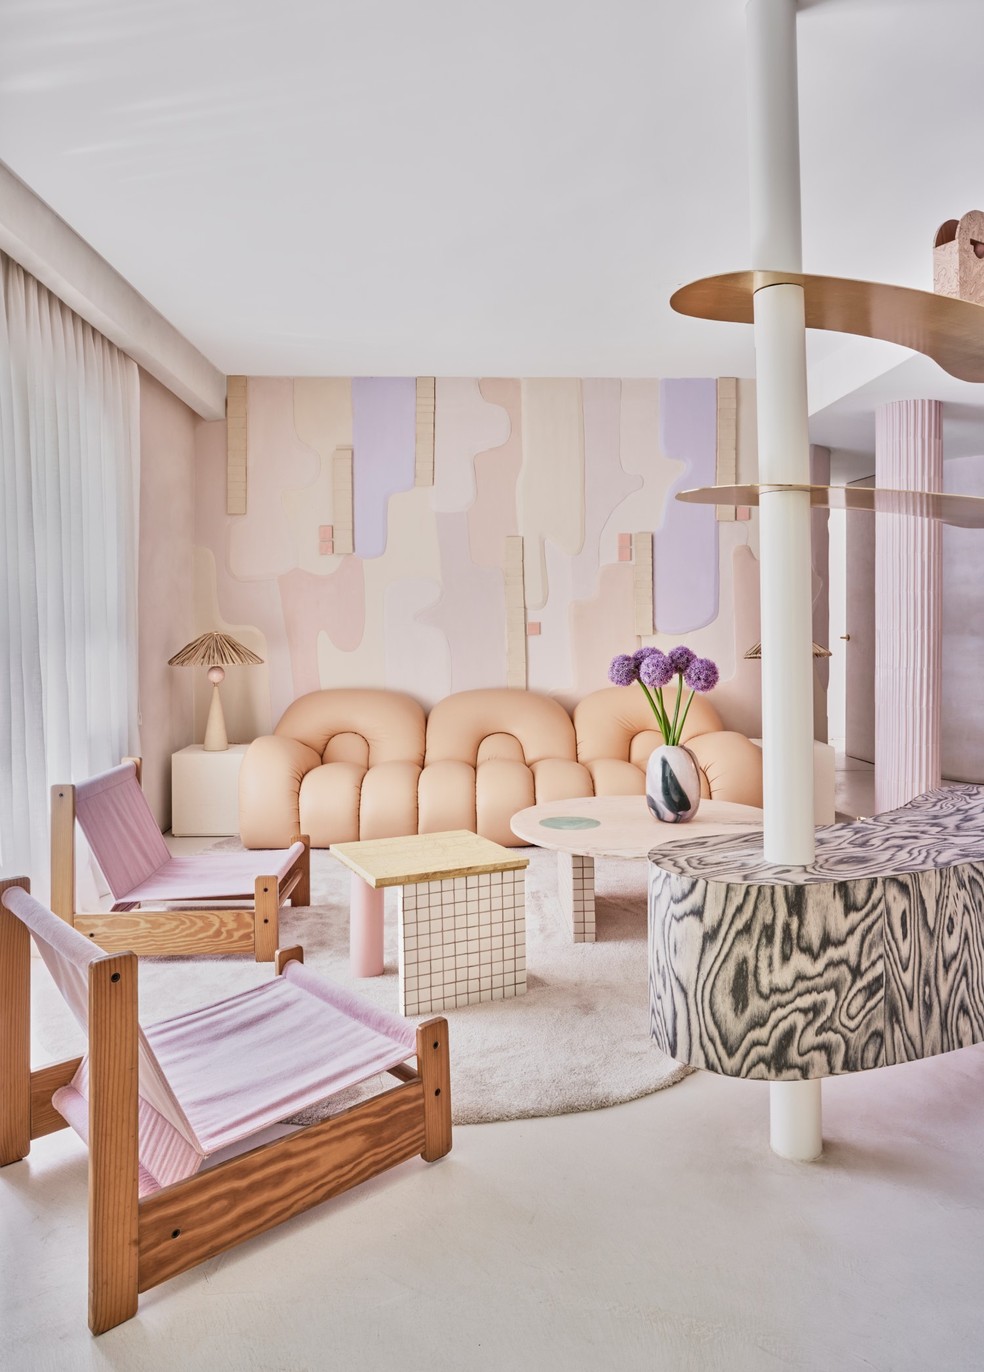 Sofá e outros móveis com curvas se destacam no conceito criado pela designer de interiores — Foto: Manolo Yllera